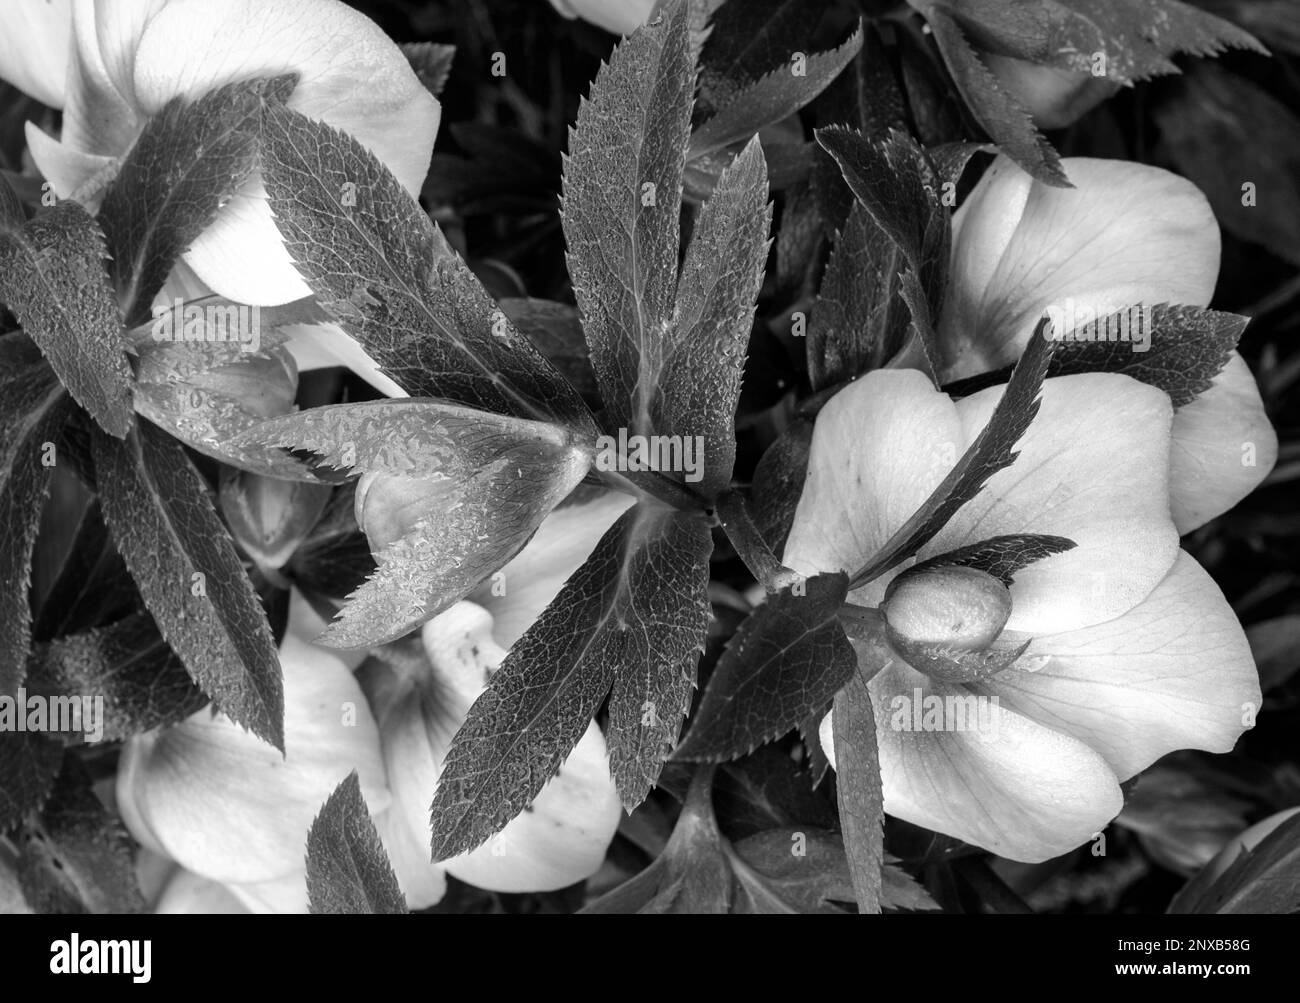 Helleborus freshness Black and White Stock Photos & Images - Alamy